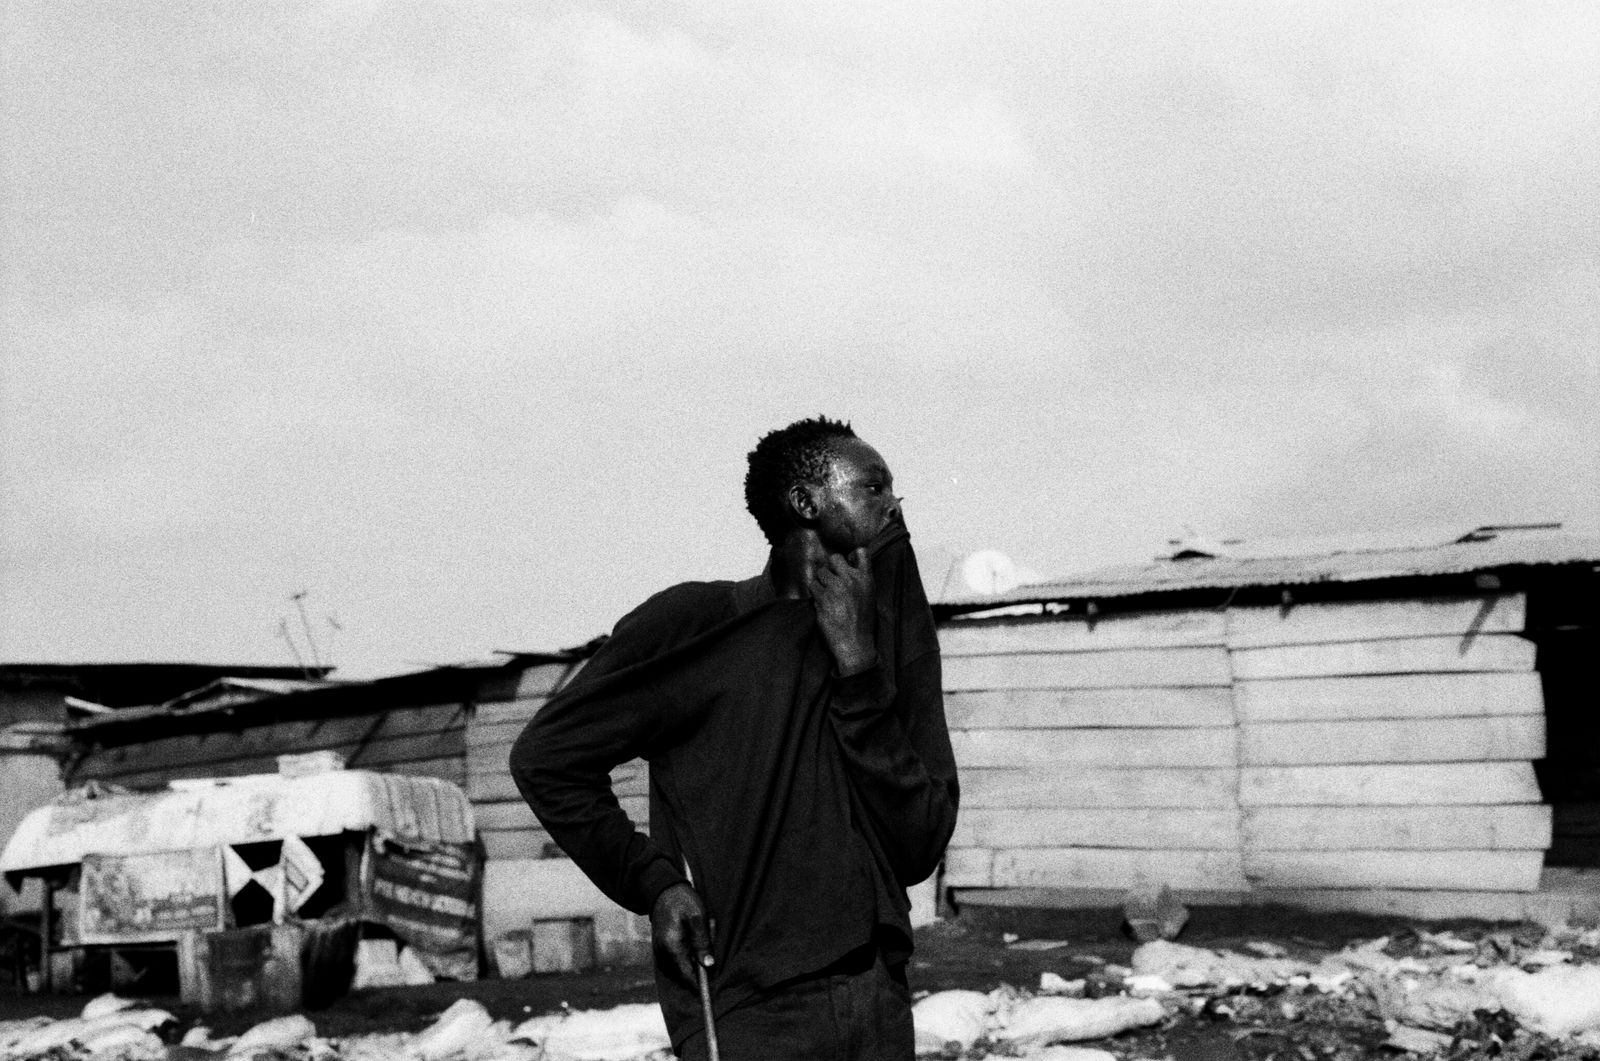 © carolina rapezzi - Image from the Burning Kilimanjaro photography project